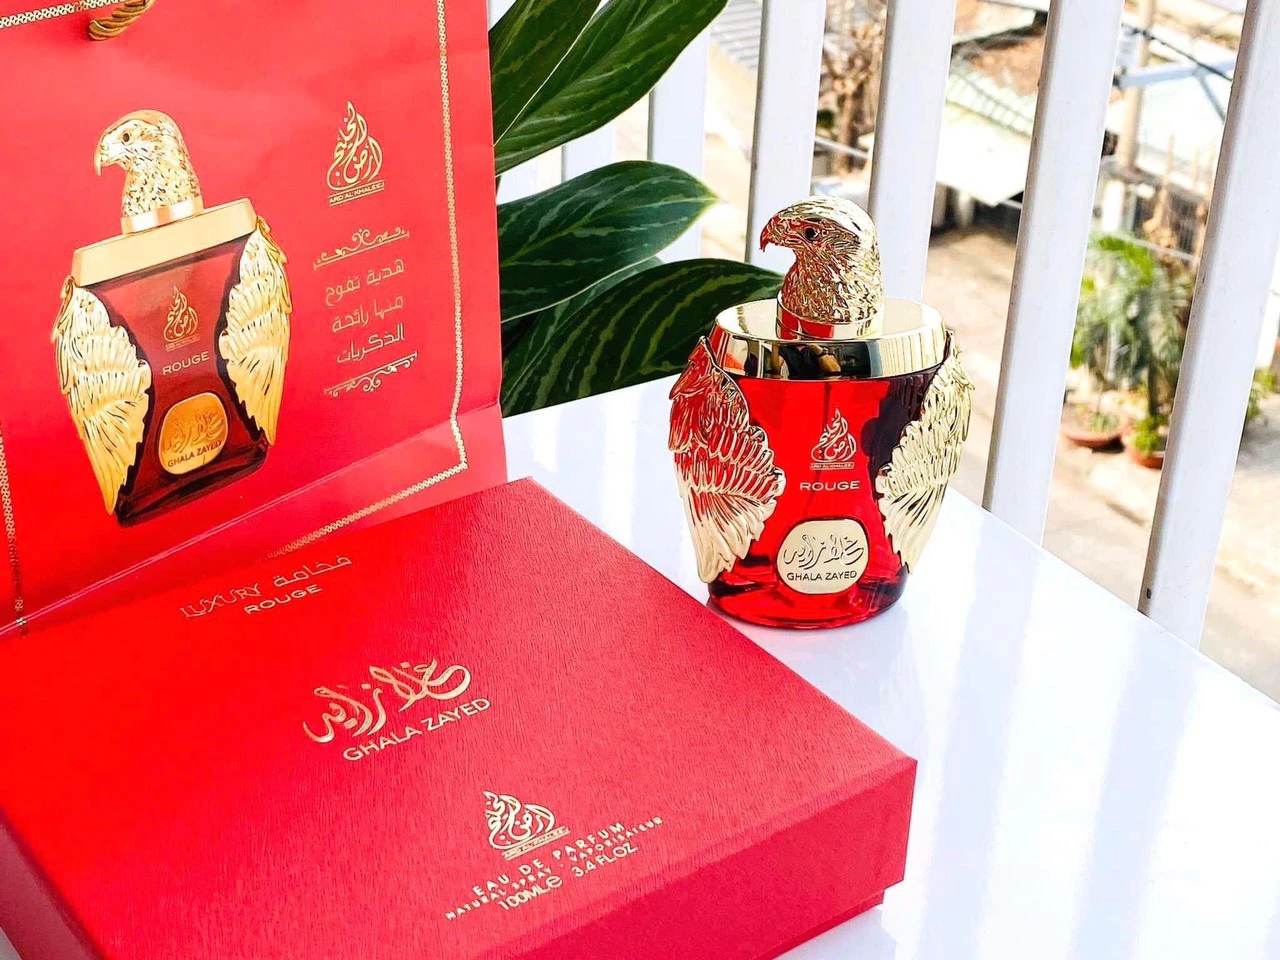 Nước hoa đại bàng đỏ Ghala Zayed Rouge là dòng nước hoa Unisex với mùi hương thơm dịu, ấm áp